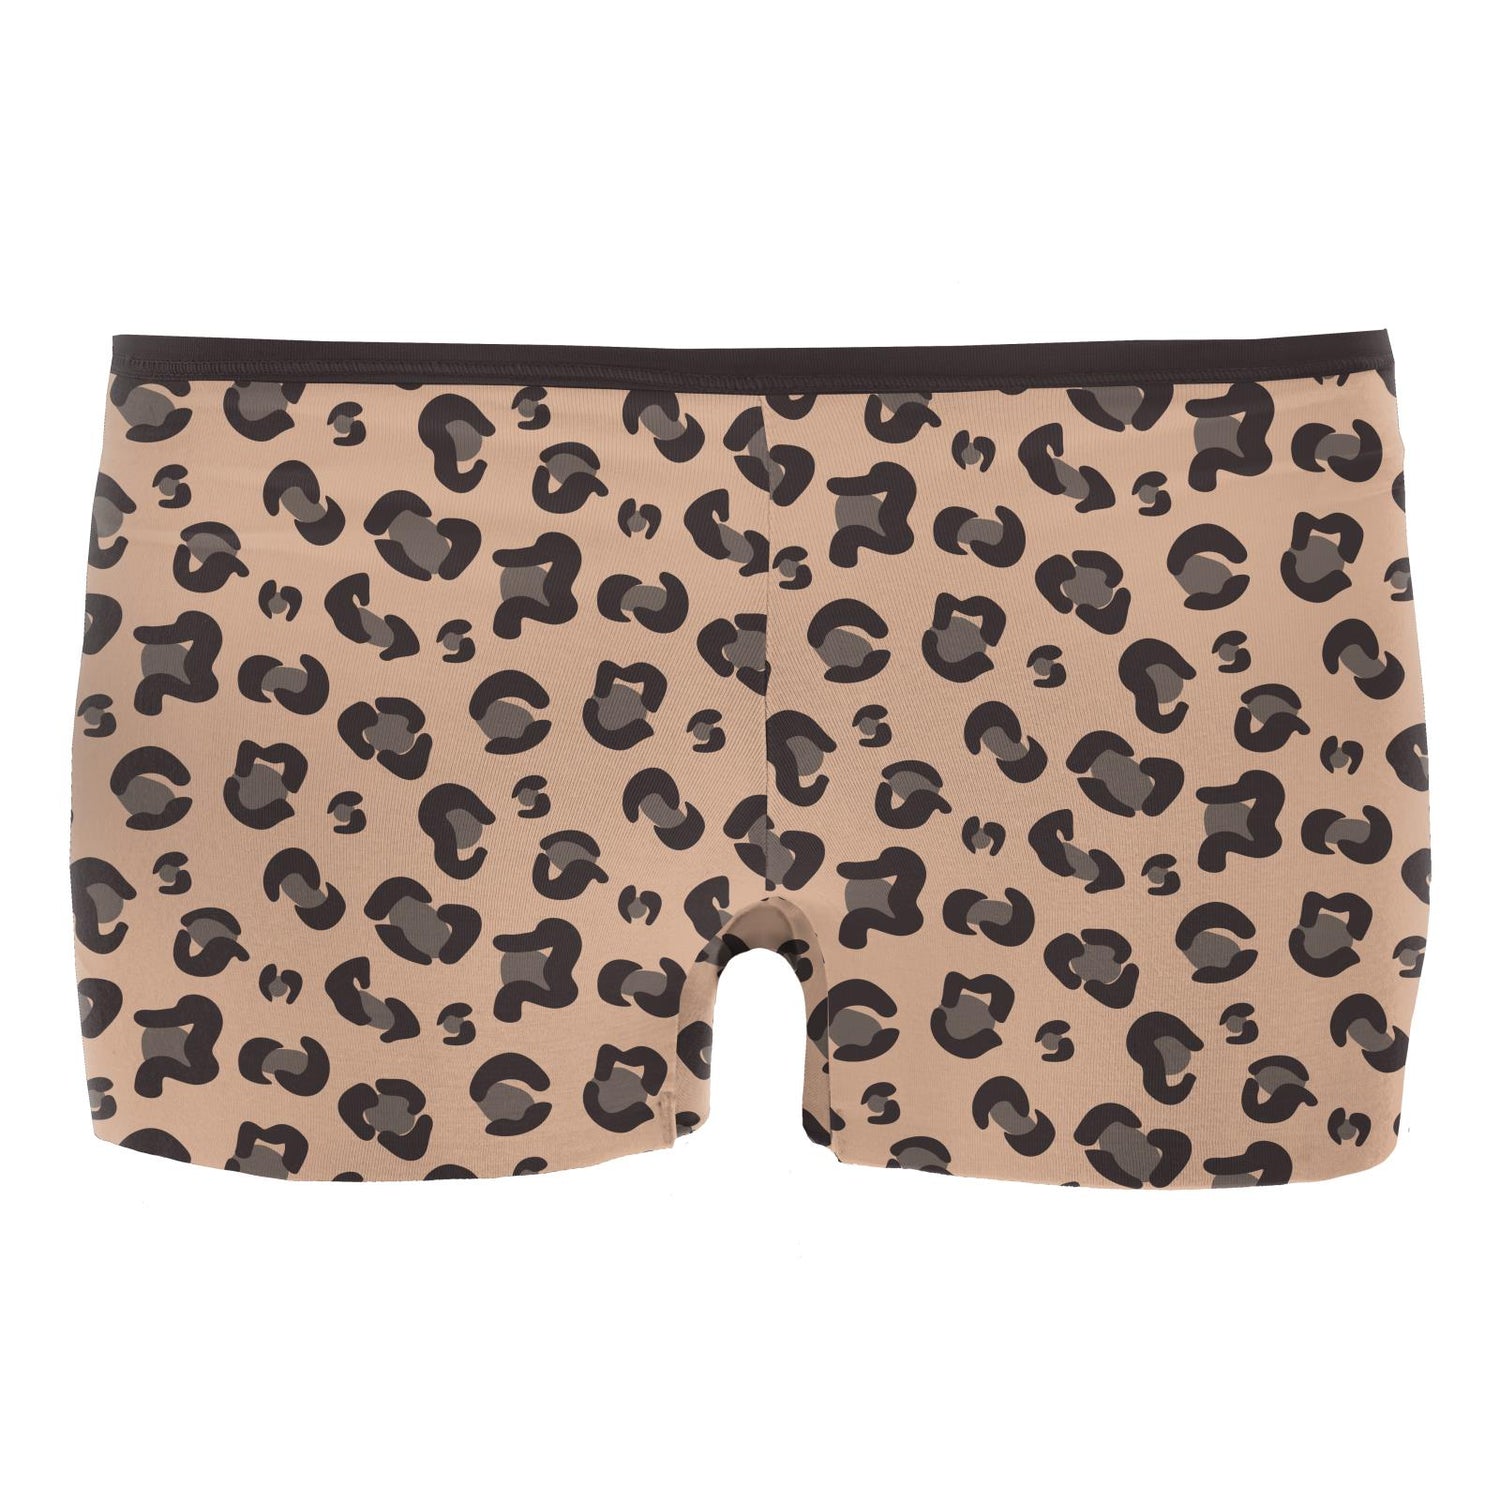 Women's Print Boy Short Underwear in Suede Cheetah Print